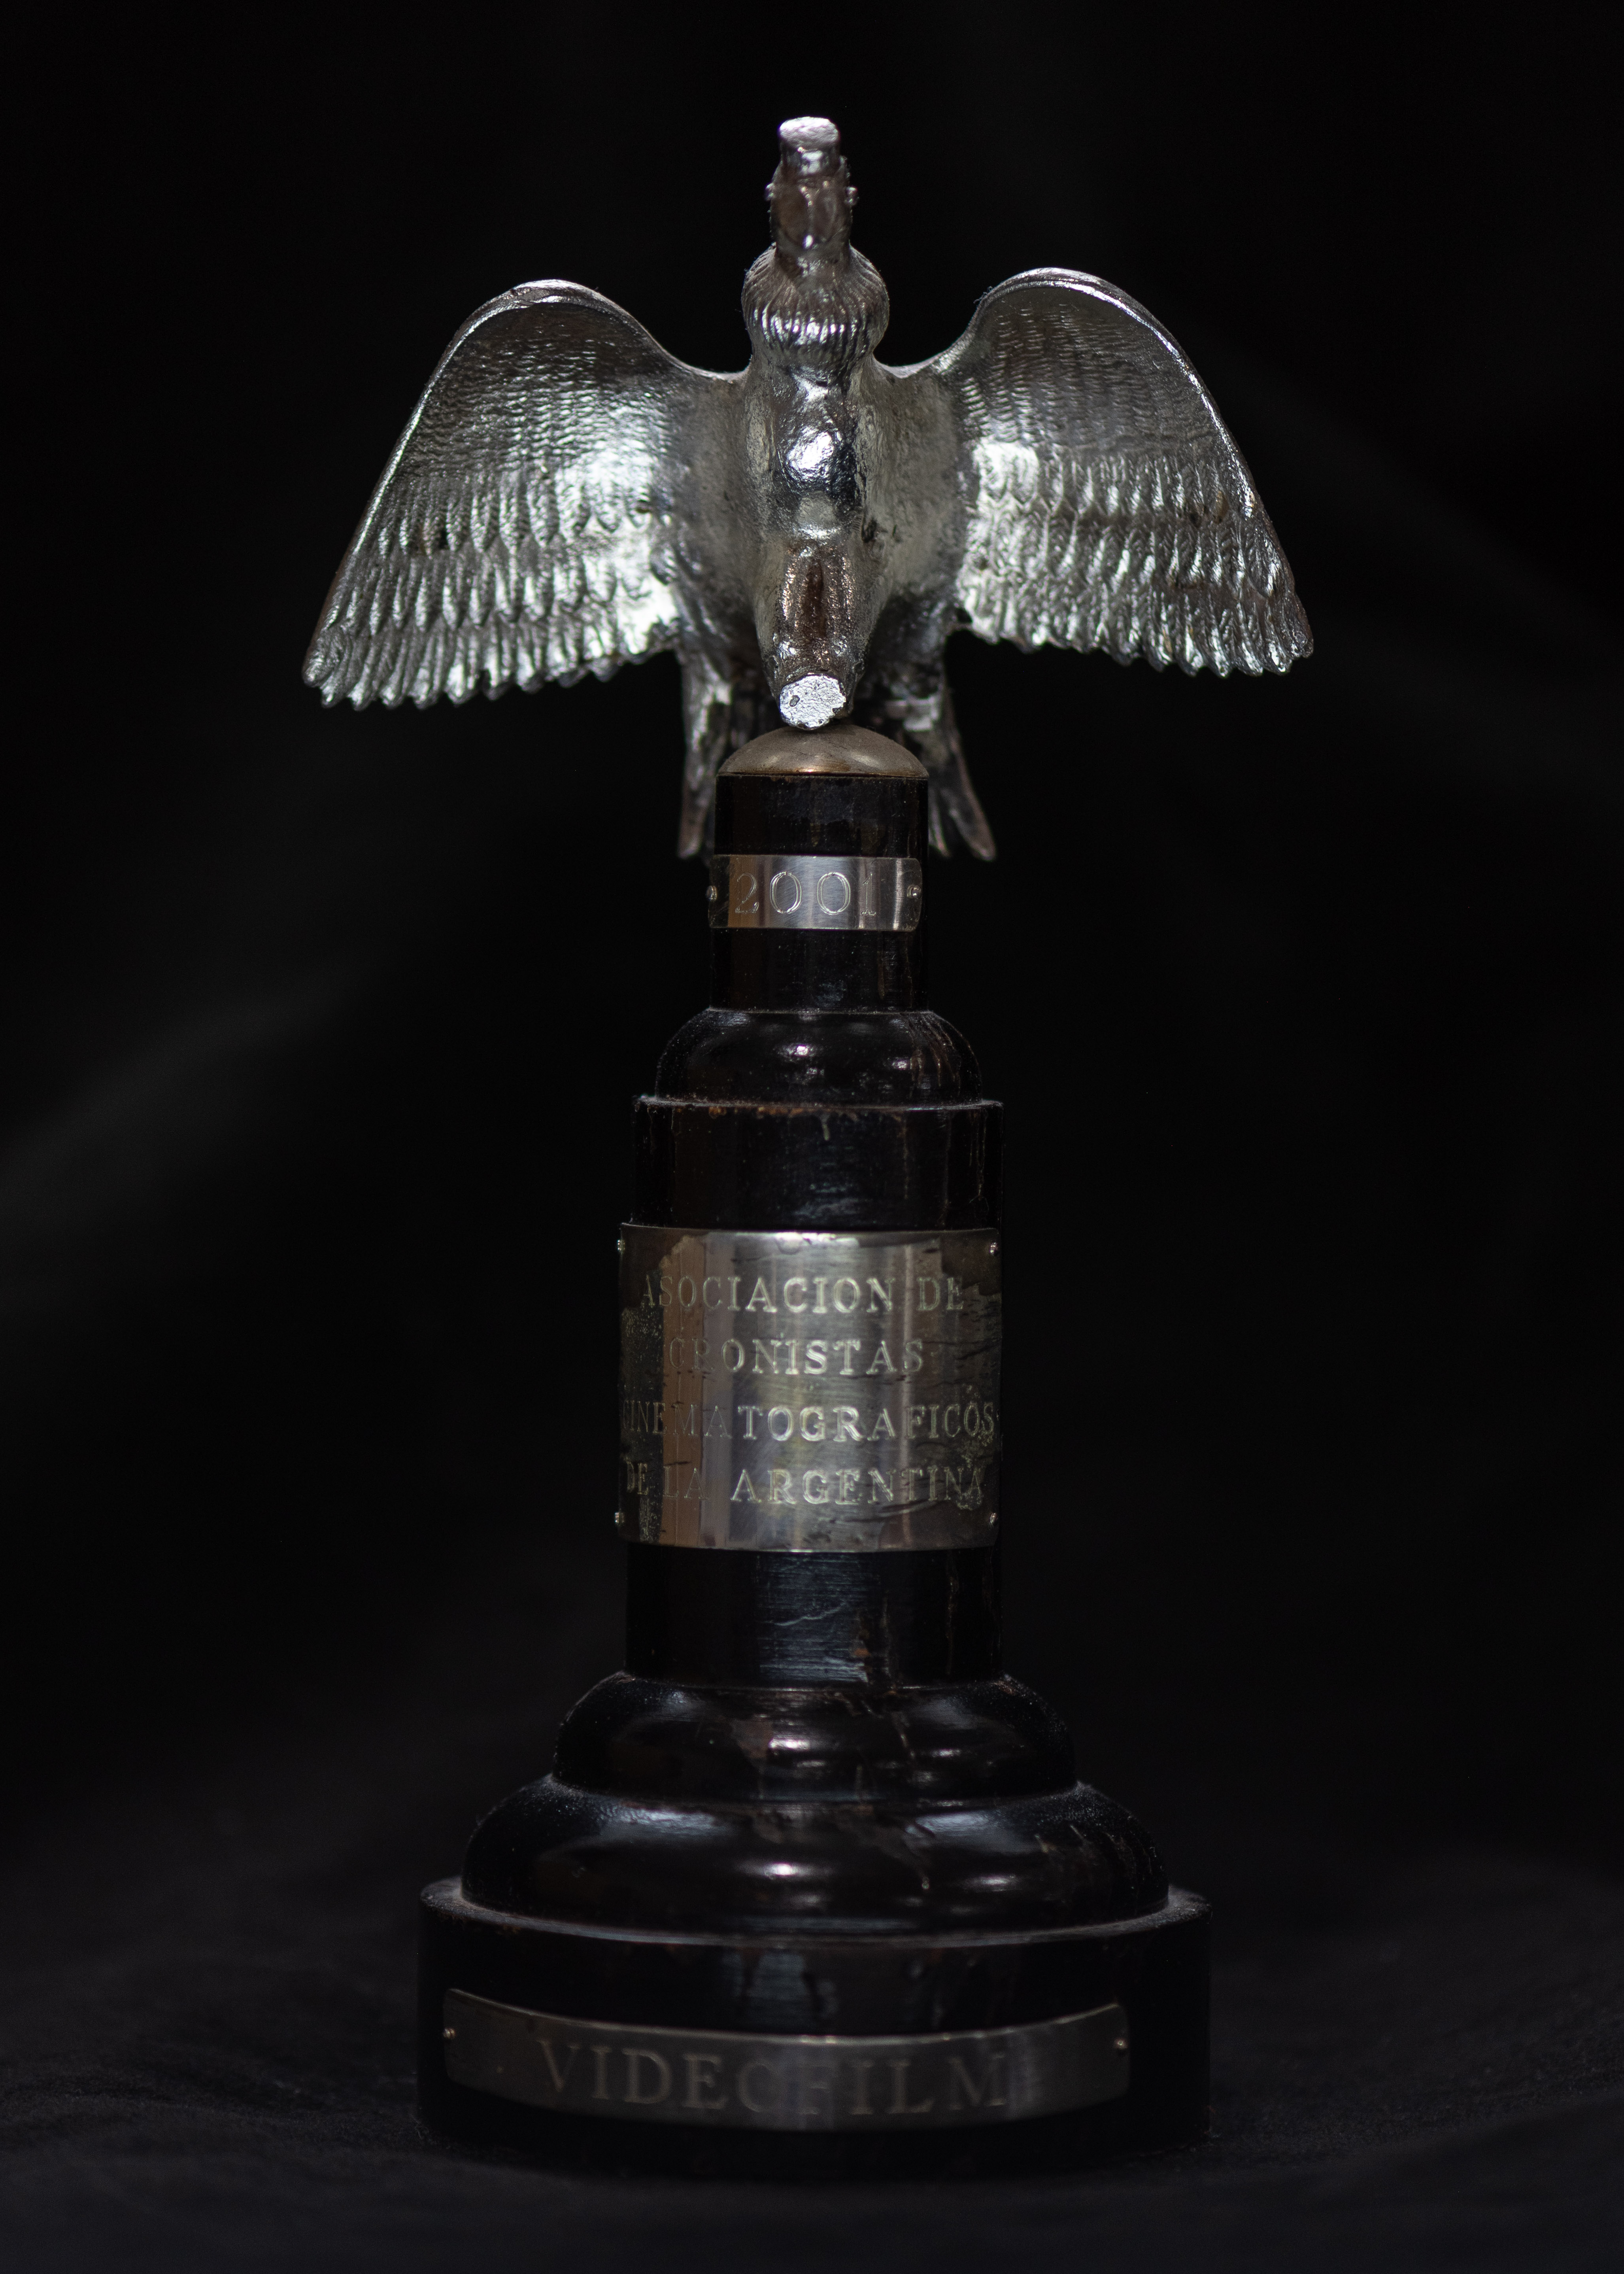 Silver Condor Award